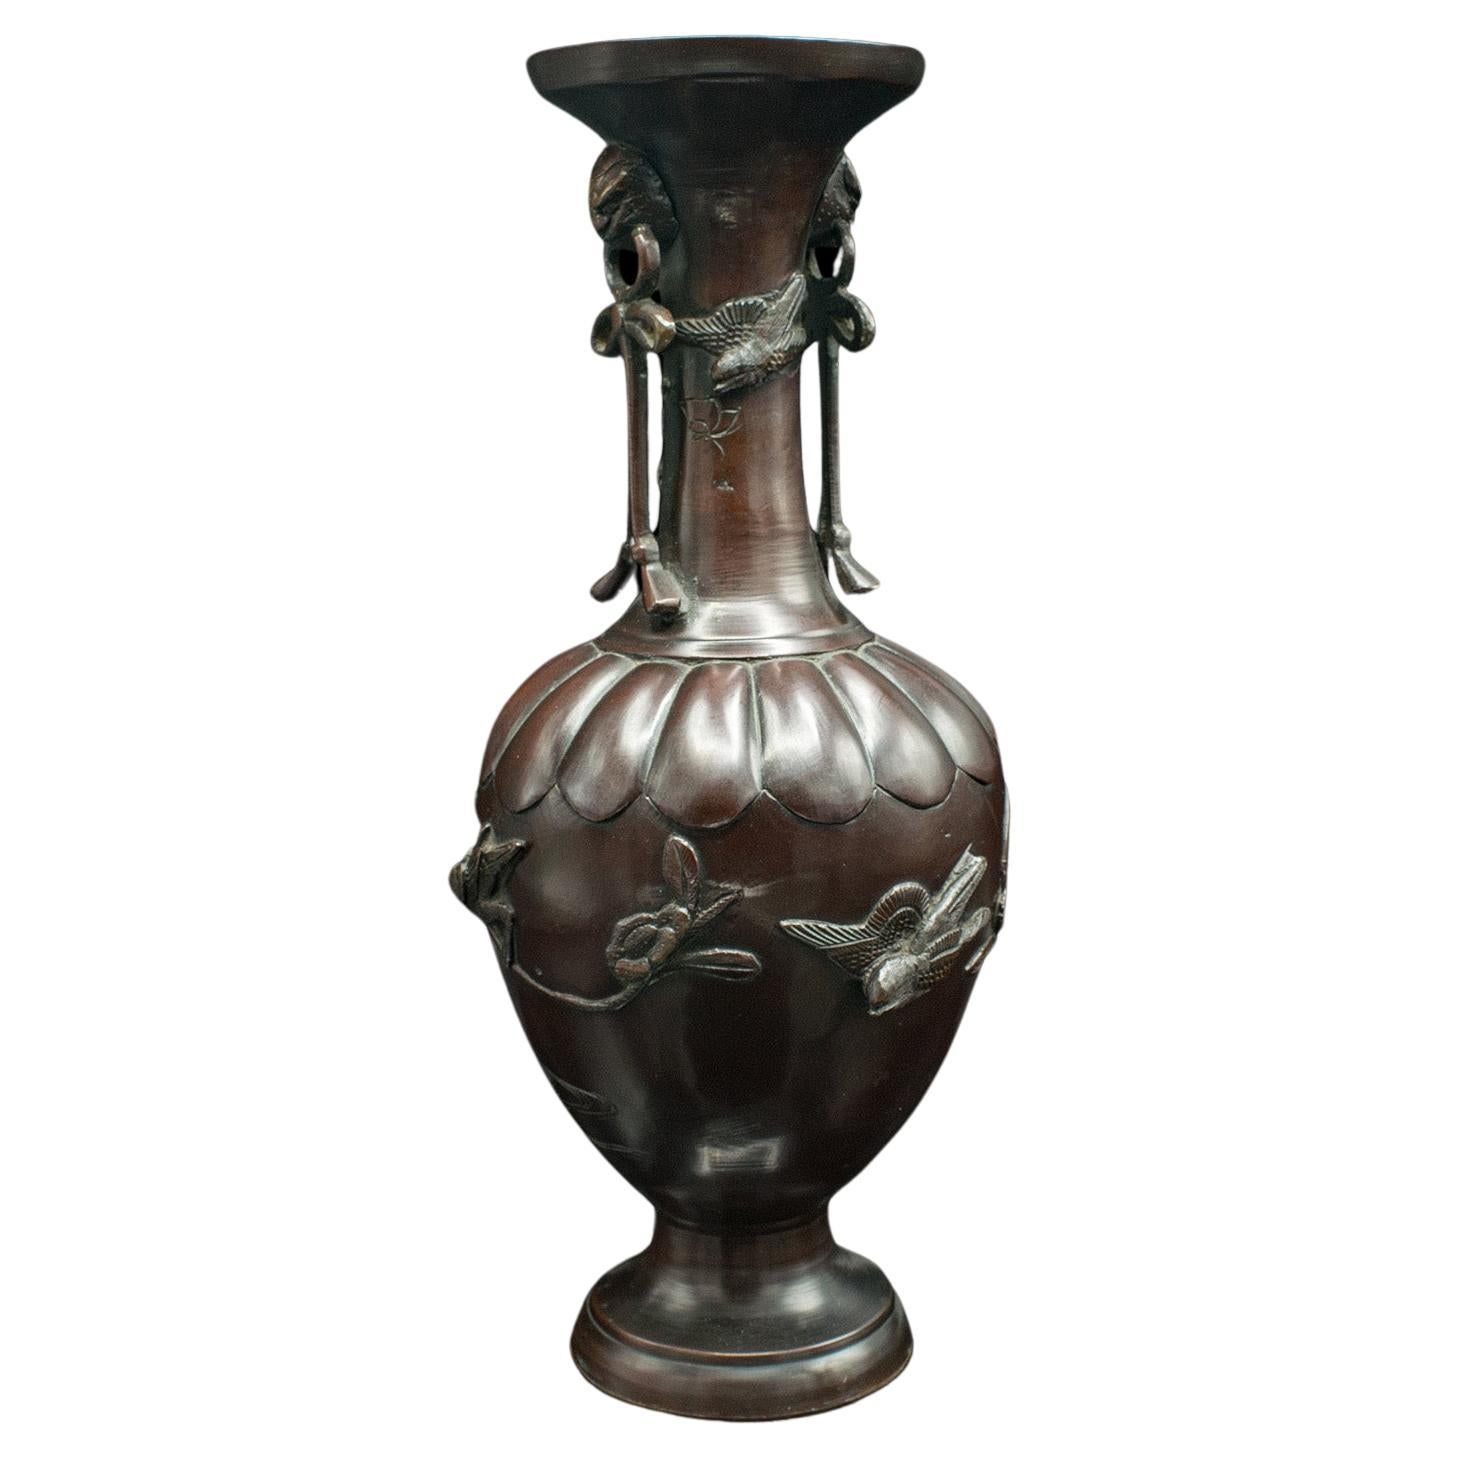 Antique Decorative Stem Vase, Japanese, Bronze, Meiji Urn, Victorian, Circa 1880